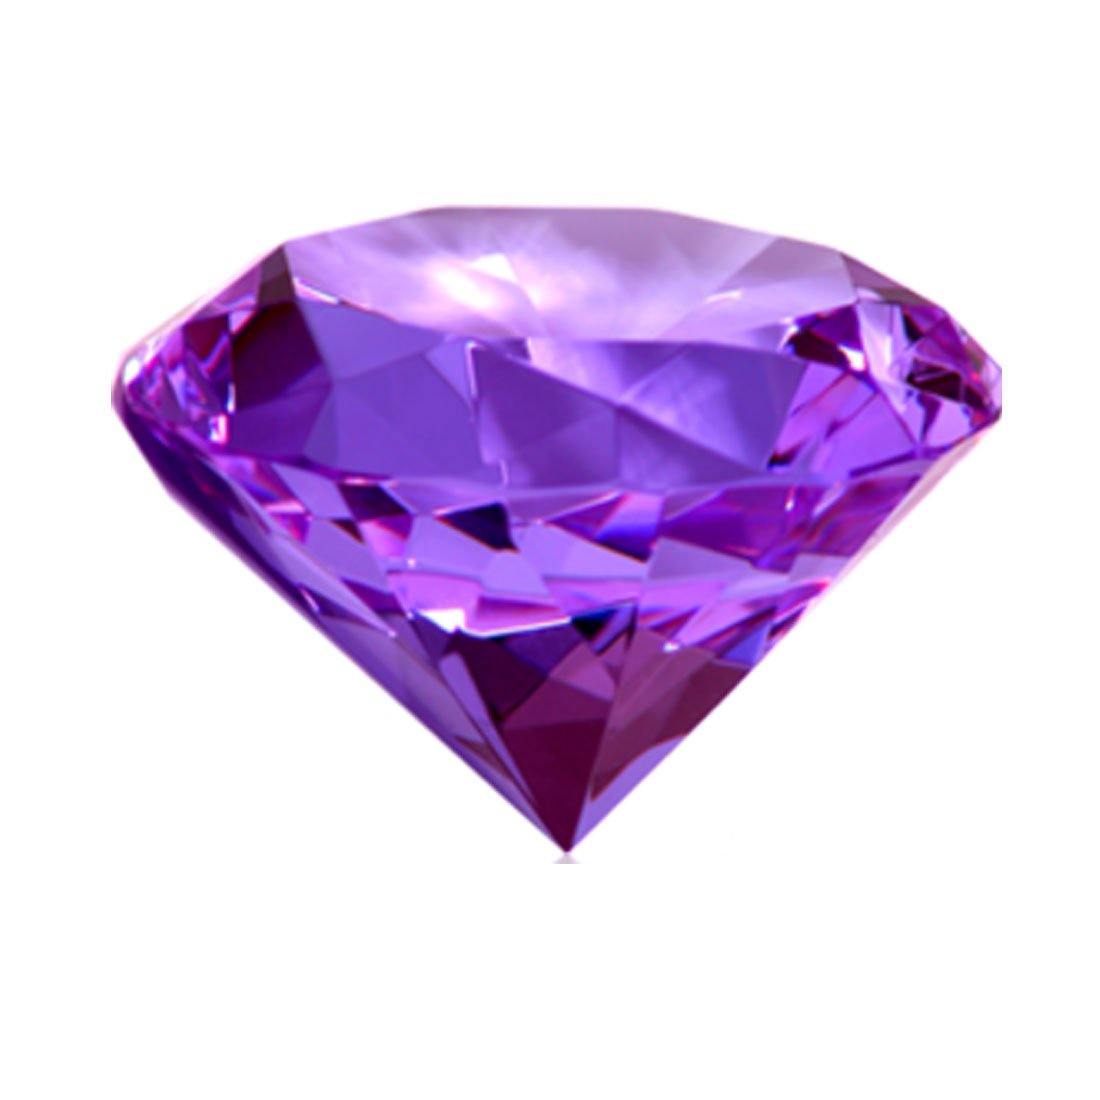 Алмаз аметист. Пурпл диамонд. Кристал диамонд сапфир. Аметист камень Геншин. Diamond Purple/ Даймонд Парпл.